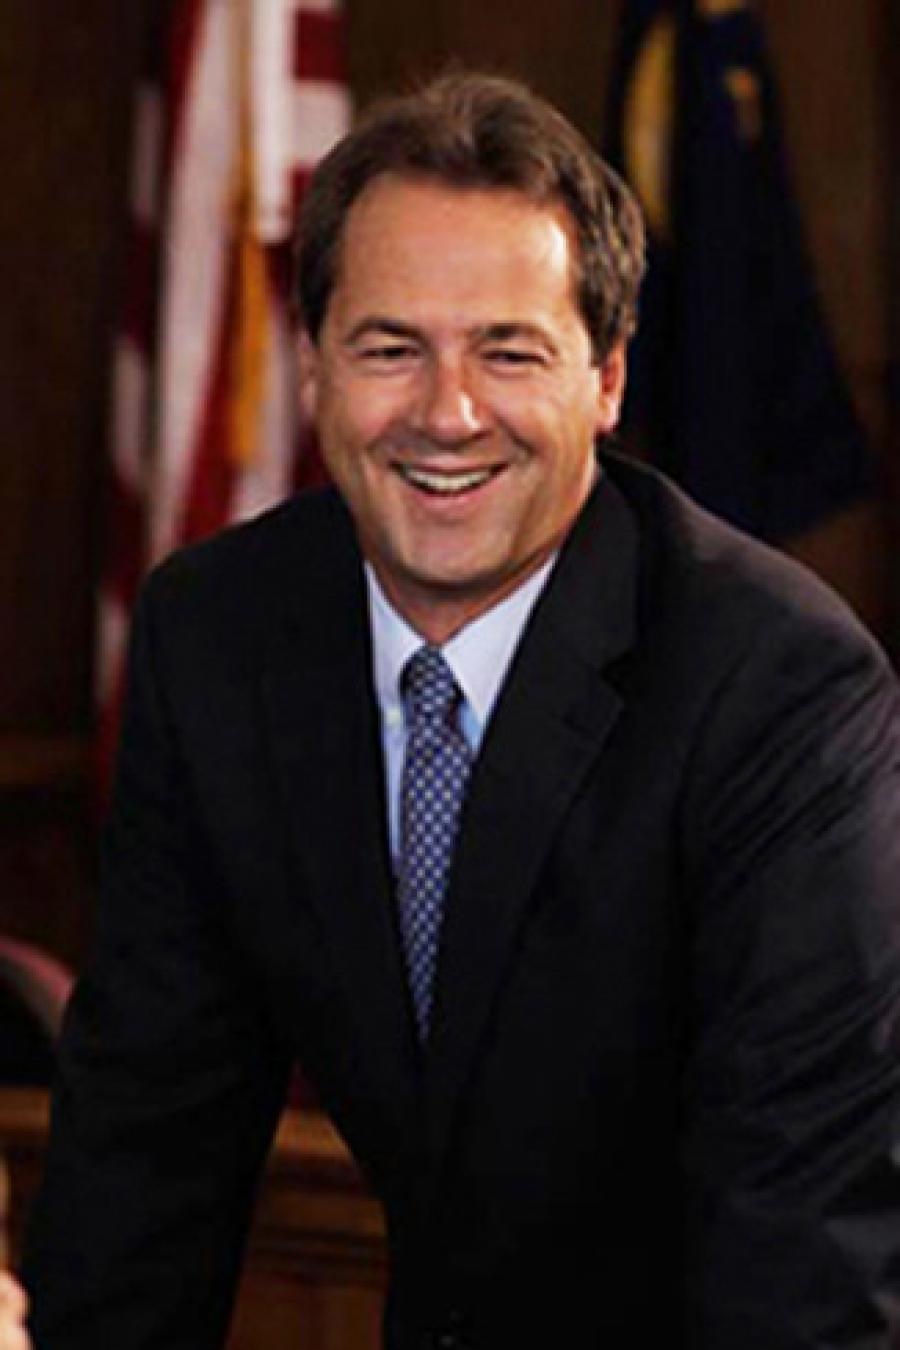 Governor Steve Bullock
(governor.mt.gov photo)